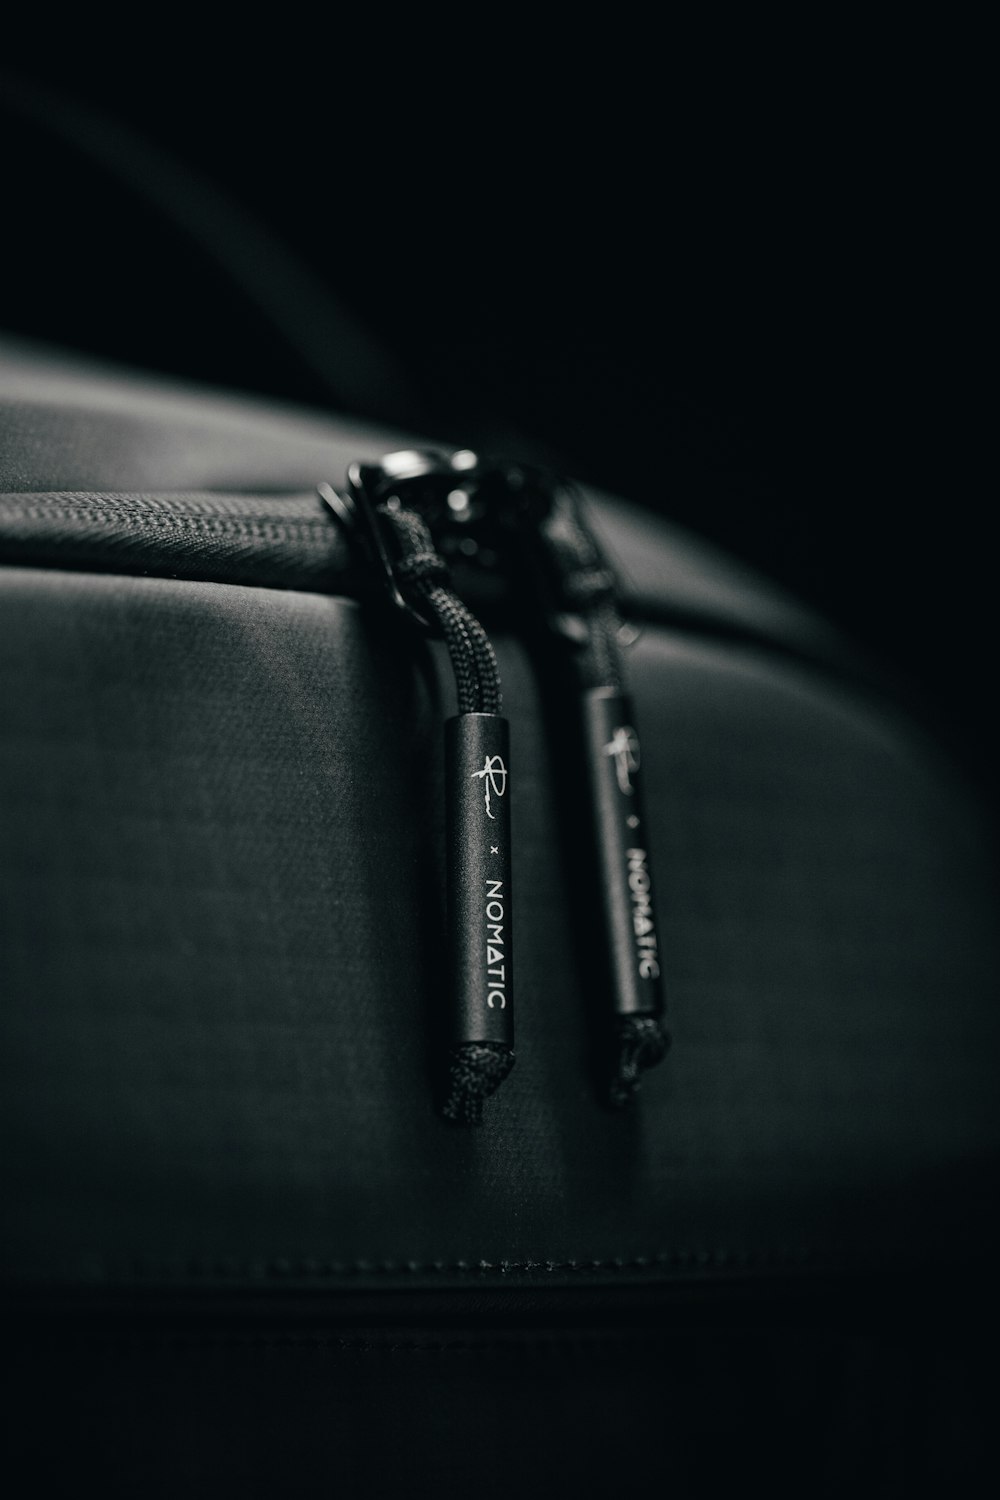 borsa in pelle nera in fotografia in scala di grigi